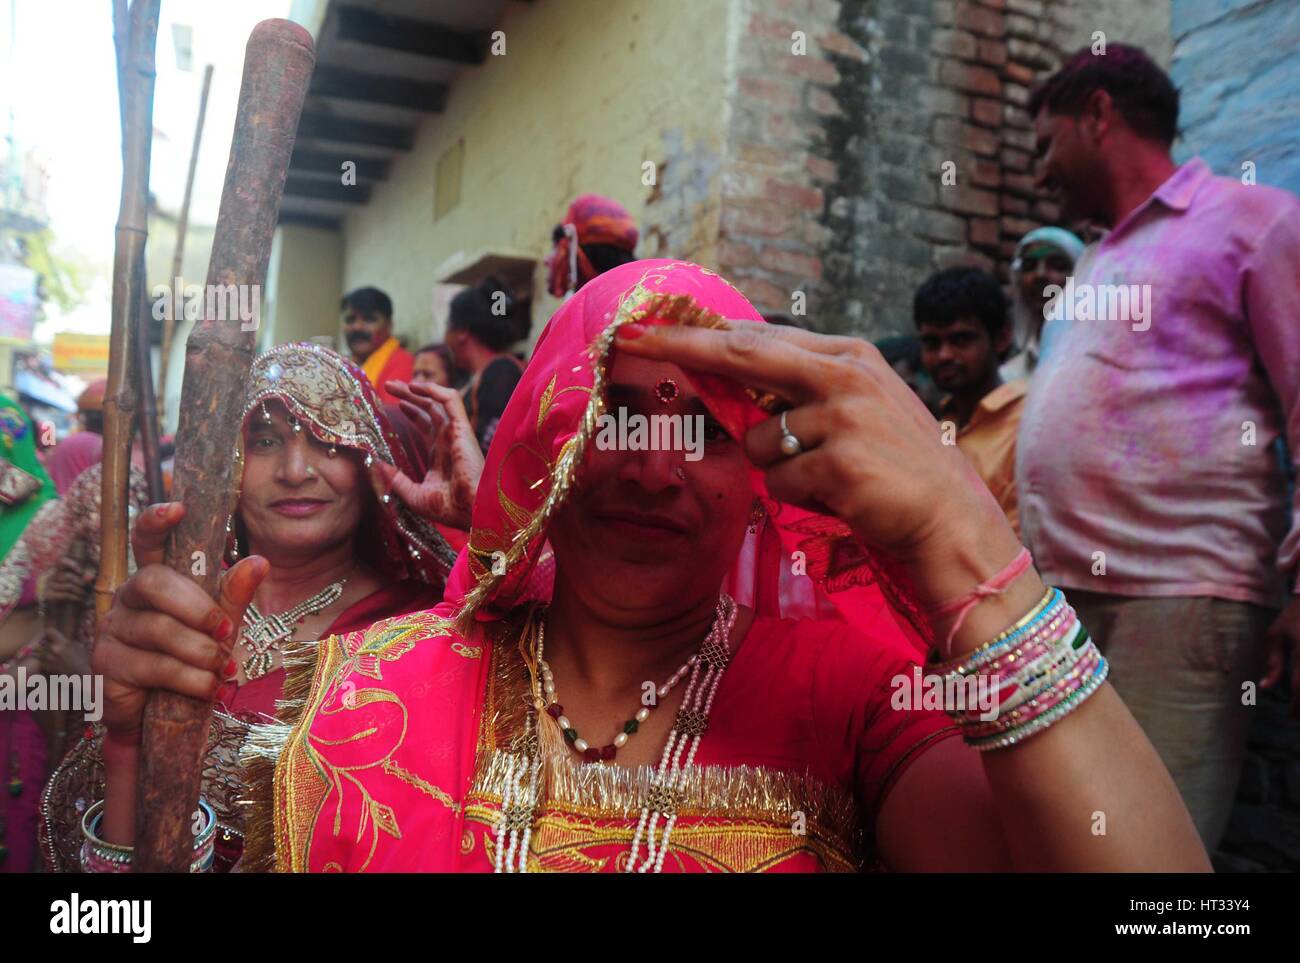 Mathura, Uttar Pradesh, Indien. 7. März 2017.  Ein indisch-hinduistischen Frauen Anhänger reagieren auf Kamera halten Stick während der jährlichen Lathmar Holi-Fest in Nandgaon Dorf, Mathura, Indien, 7. März 2017 teilzunehmen. Holi ist das hinduistische Frühlingsfest der Farben. In Barsana feiern die Menschen eine Variation von Holi Holi 'Lathmar', was bedeutet "schlagen mit Stöcken" genannt. Während der Lathmar Holi-Festival, die Frauen der Nandgaon, der Heimatstadt des hinduistischen Gott Krishna, schlagen die Männer aus Barsana, dem Geburtsort von Radha, mit Holzstöcken Credit: ZUMA Press, Inc./Alamy Live News Stockfoto